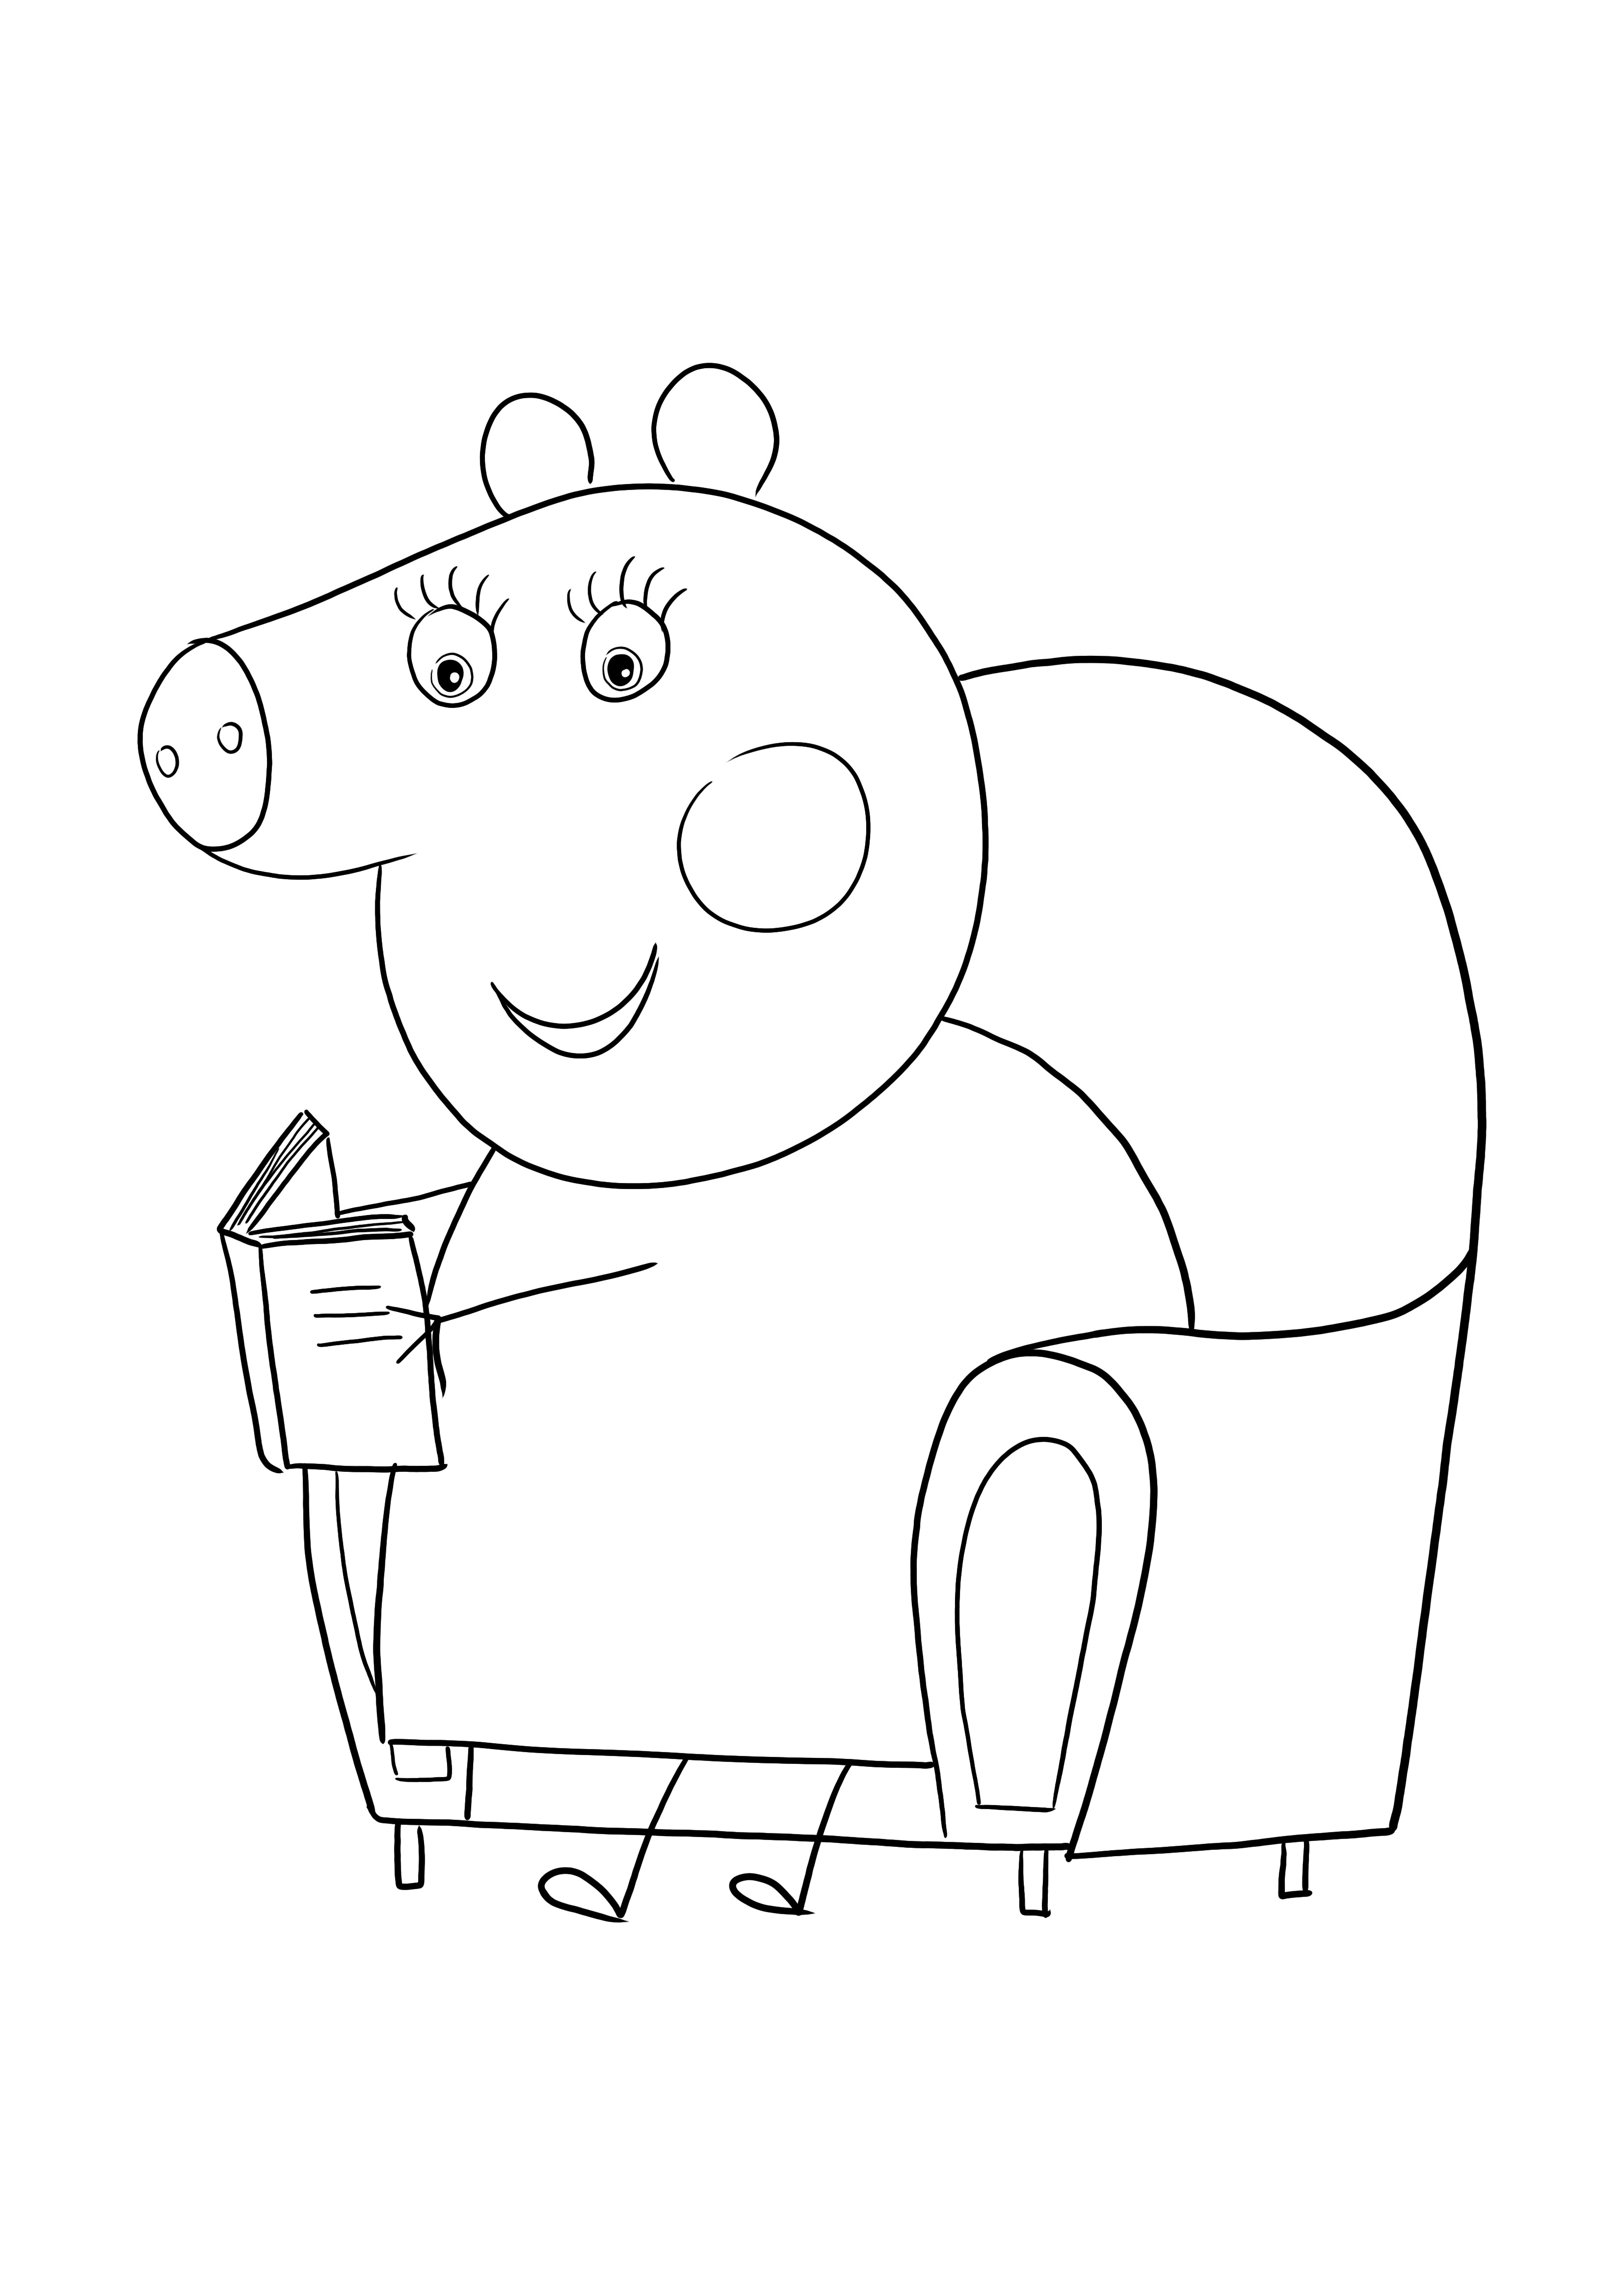 Família Peppa Pig para imprimir gratuitamente para colorir facilmente